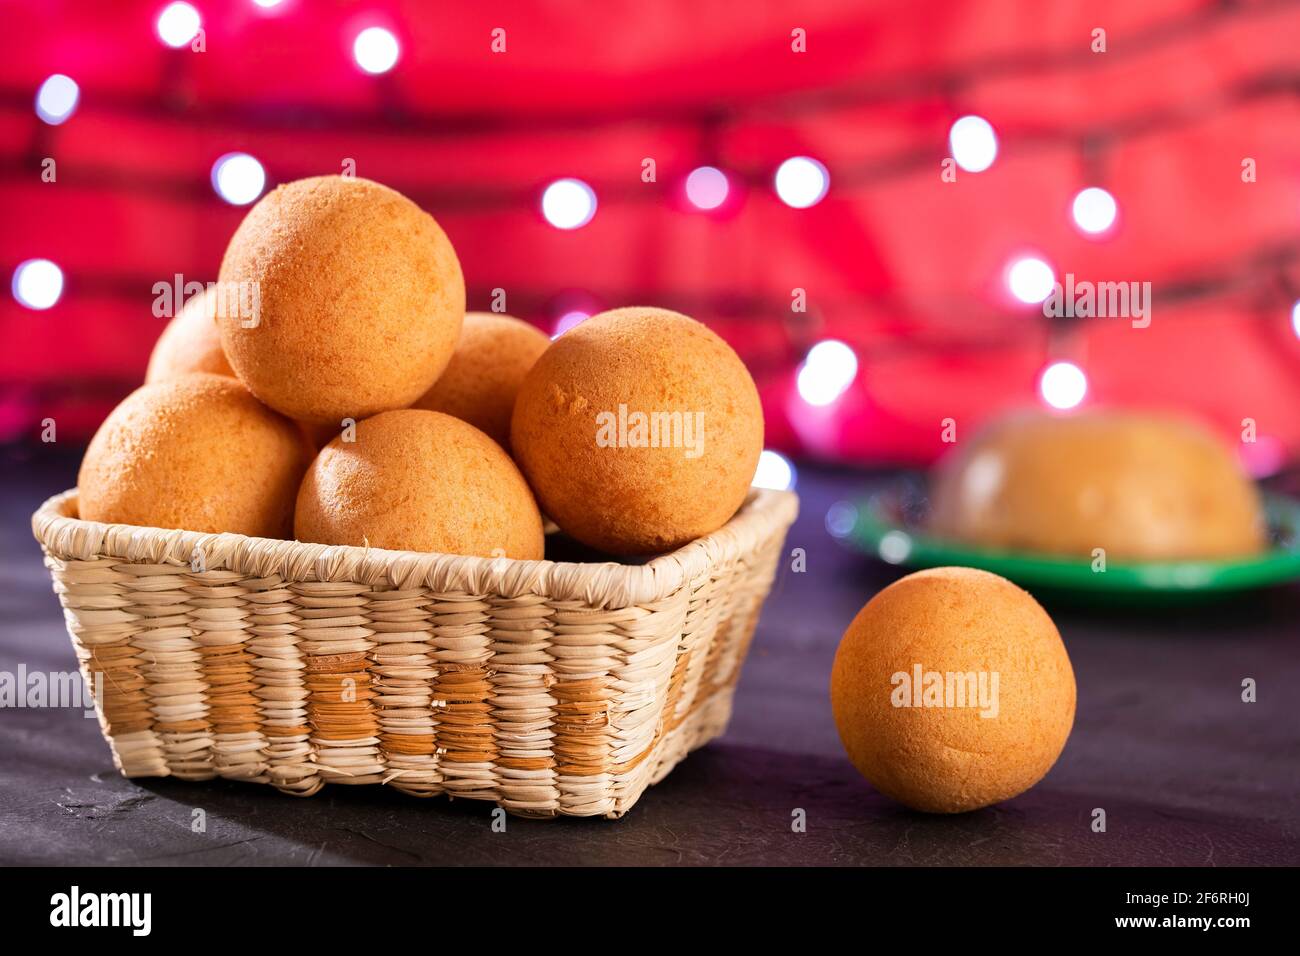 Natilla y buñuelos, Colombian Christmas cuisine Stock Photo